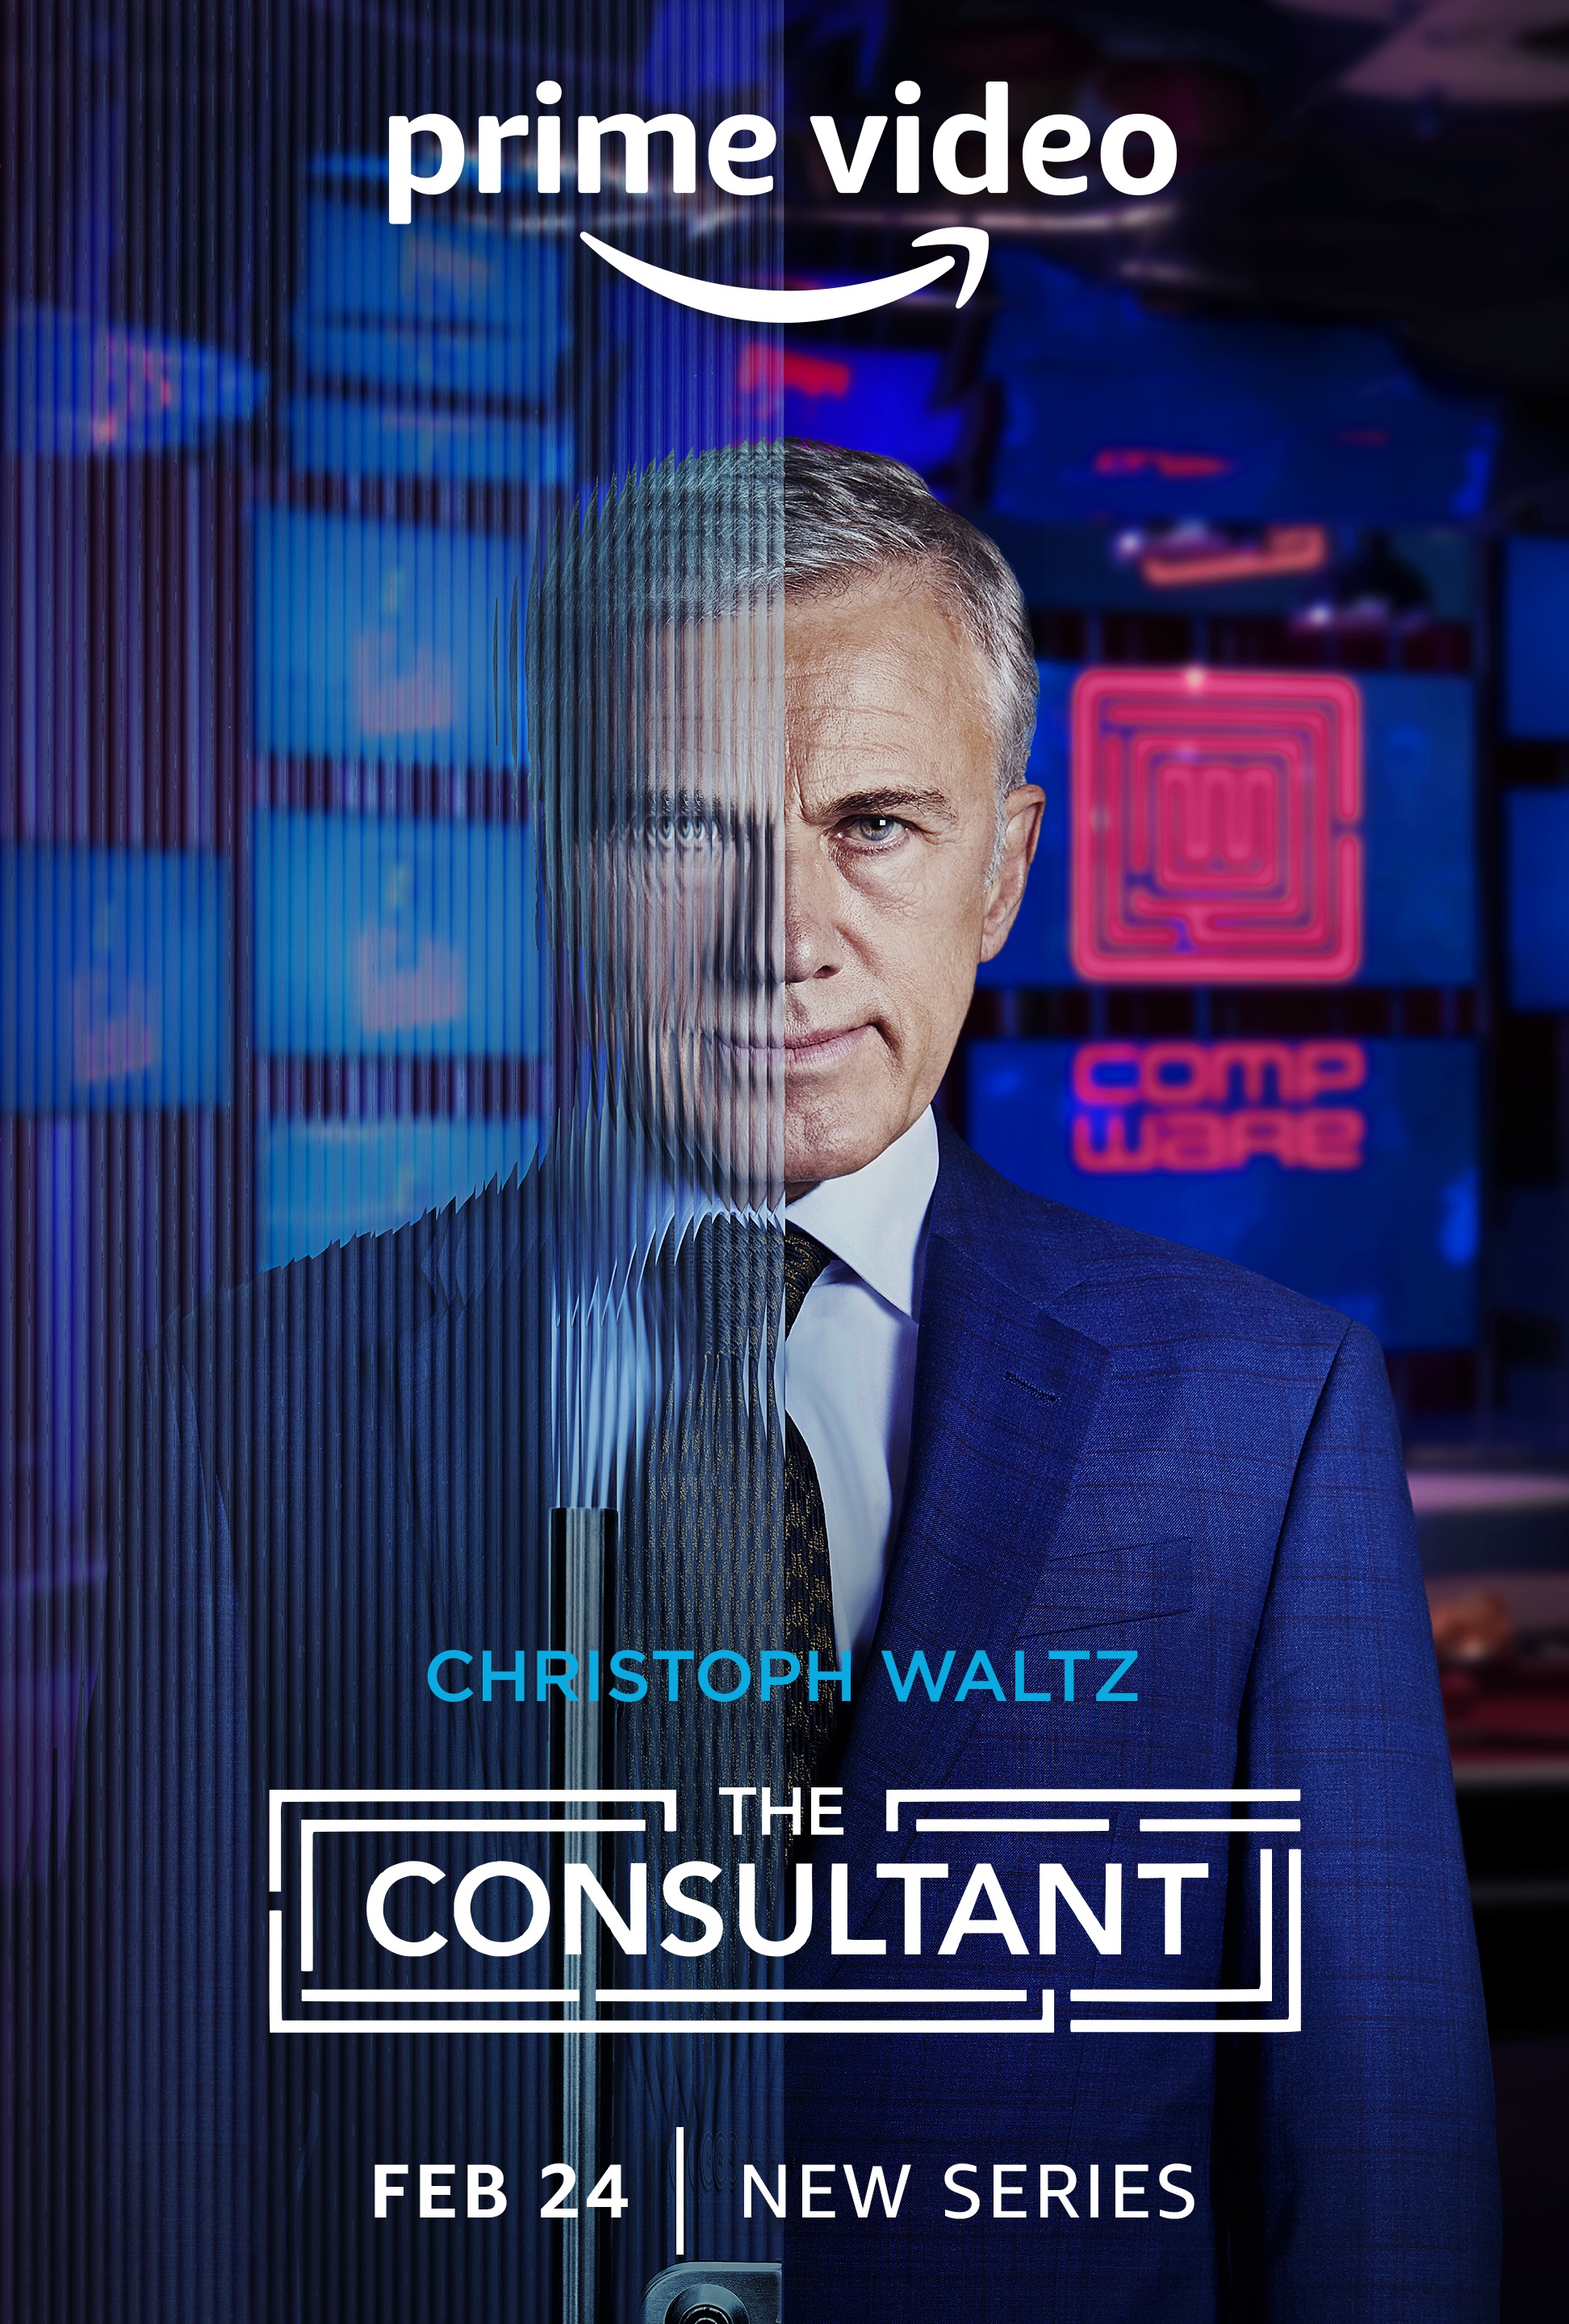 The Consultant recensione serie TV Amazon Prime Video con Christoph Waltz